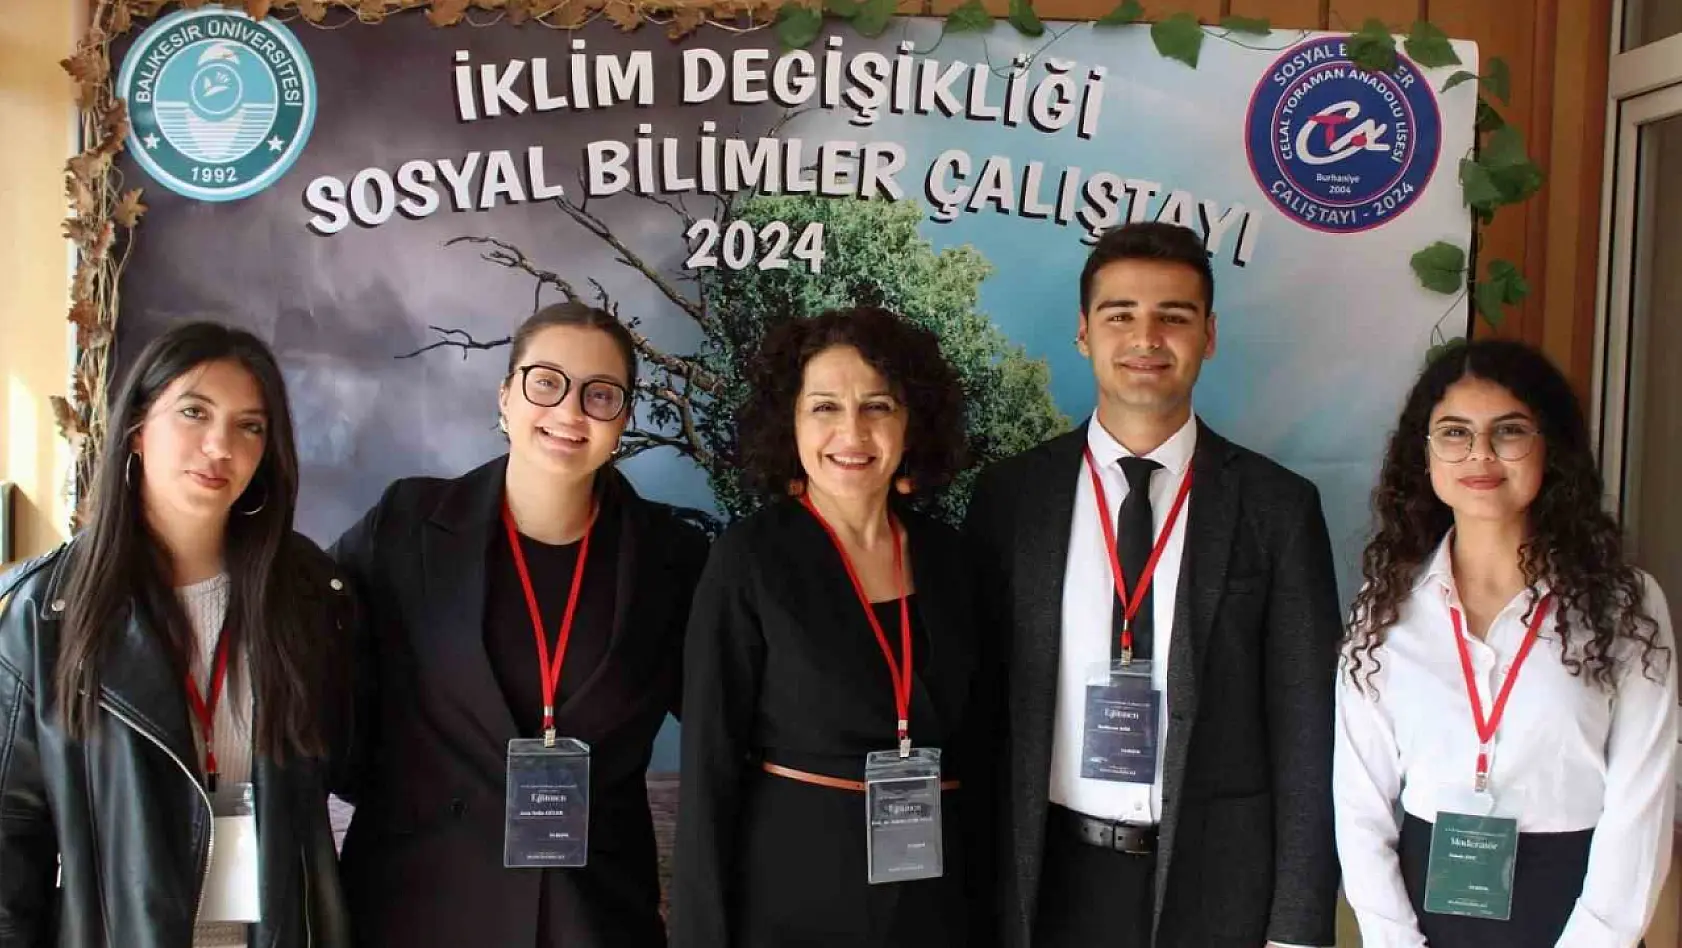 Balıkesir'de Sosyal Bilimler Çalıştayı düzenlendi